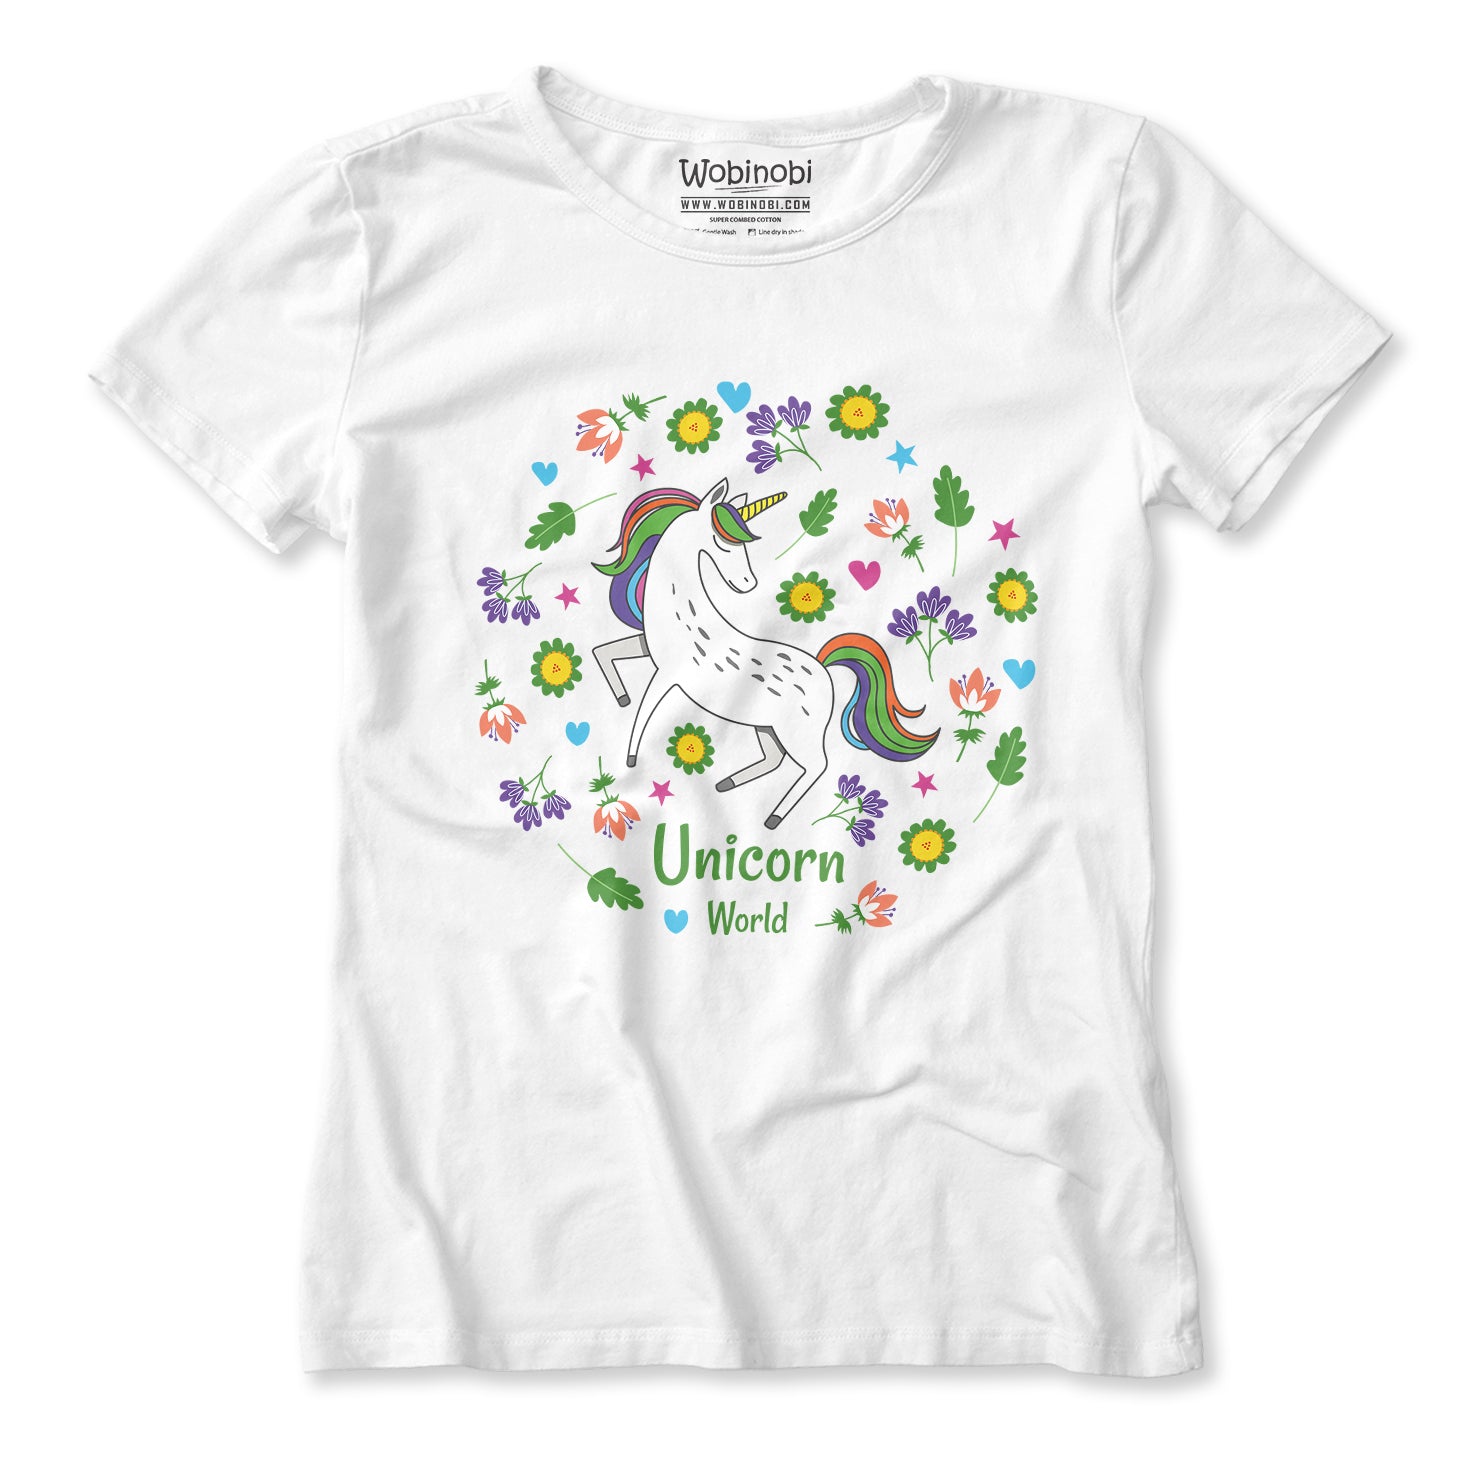 World Unicorn Wobinobi Girls – T-Shirt 100% Cotton